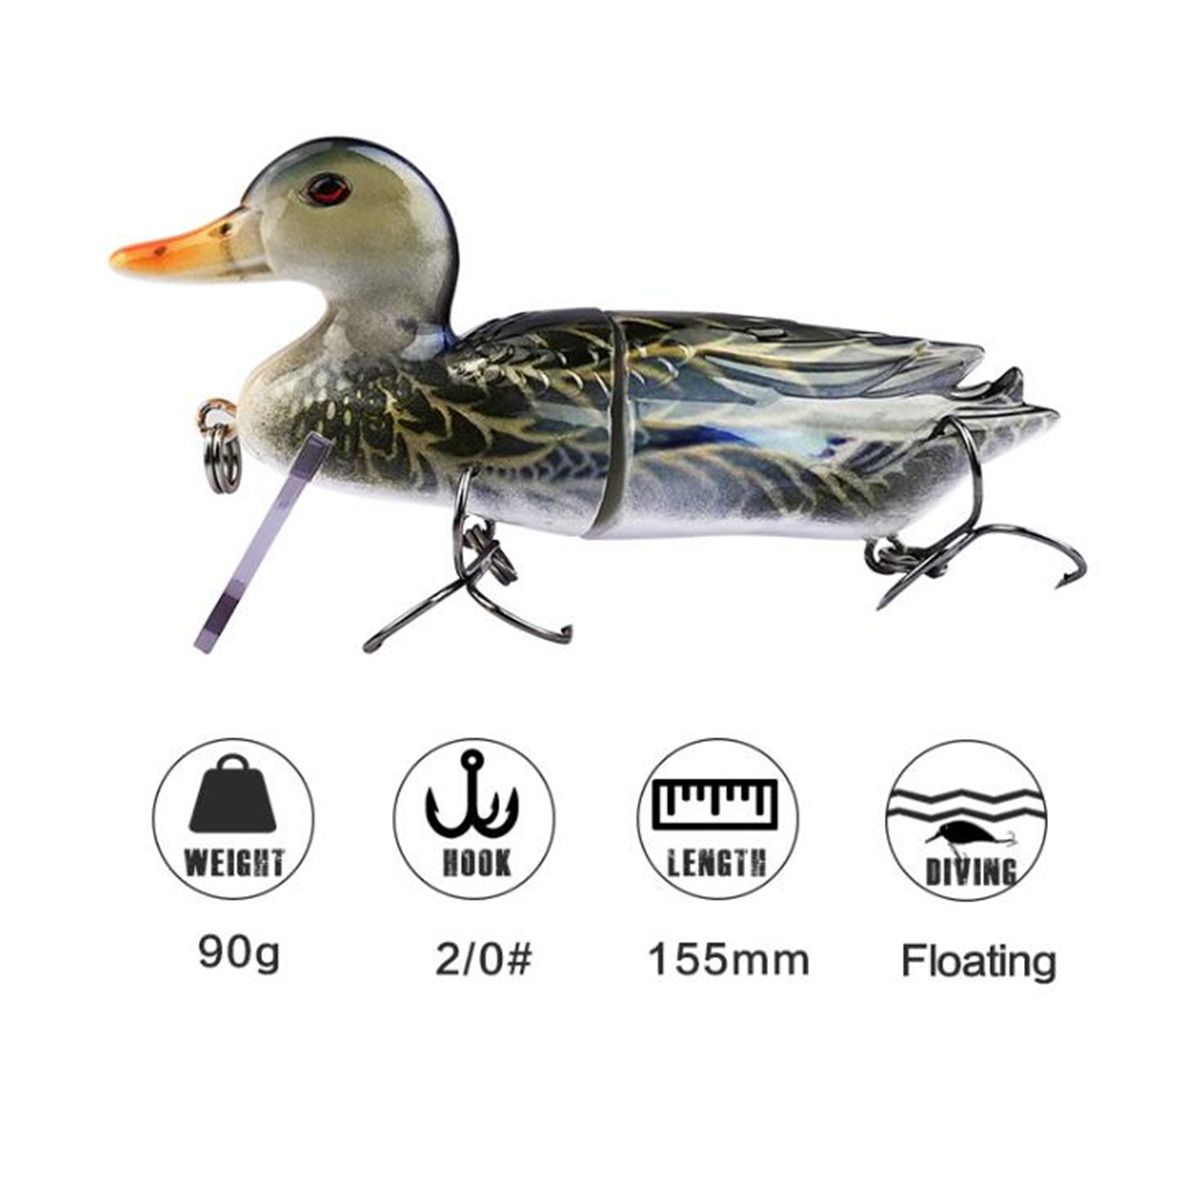 15cm-Topwater-Fishing-Lure-Duck-Floating-Treble-Hooks-For-BassPikeCatfishMusk-1494864